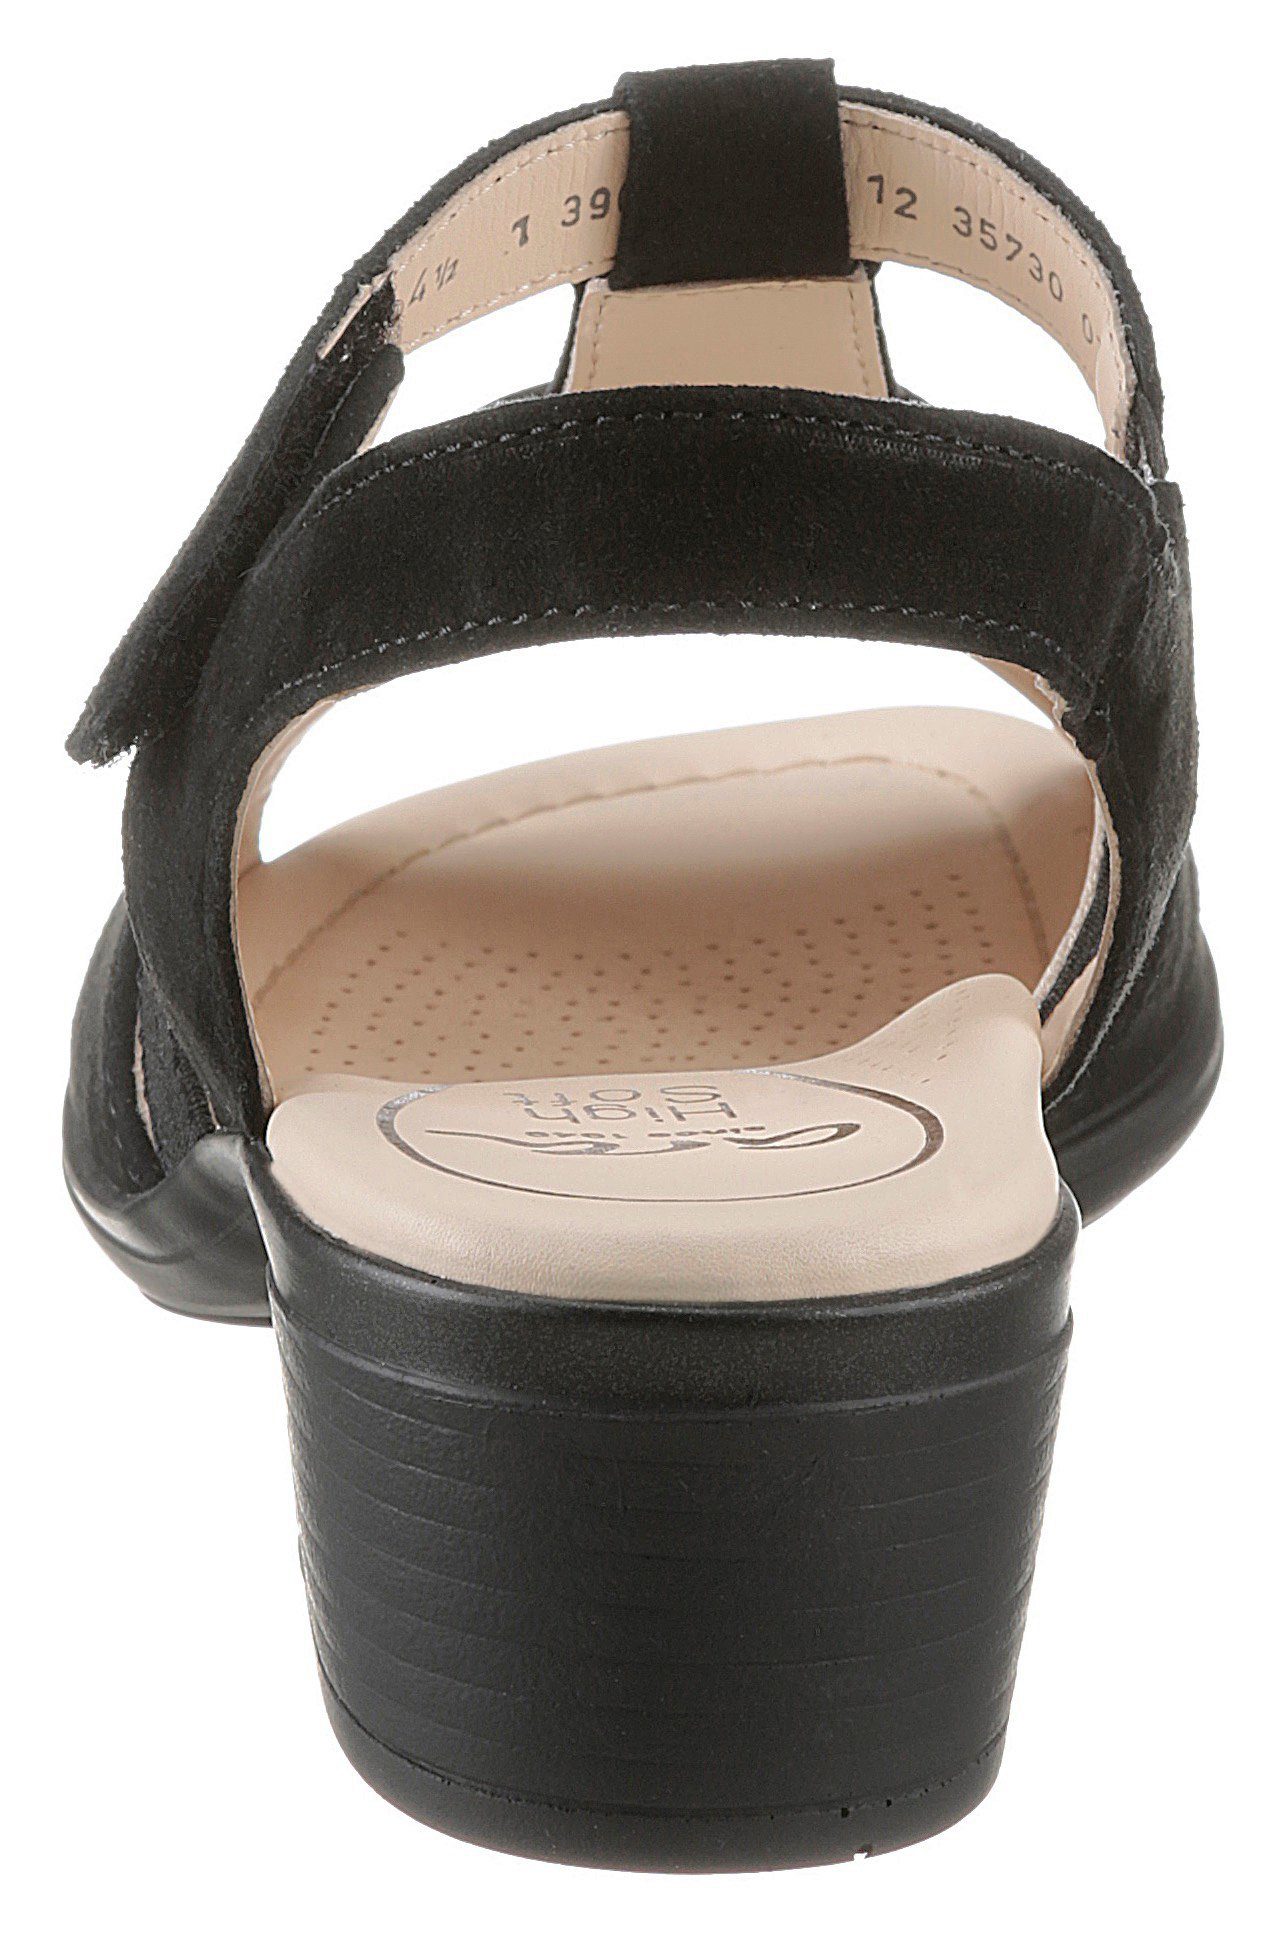 Ara LUGANO Sandalette in bequemer Schuhweite weit) 045149 schwarz H (sehr